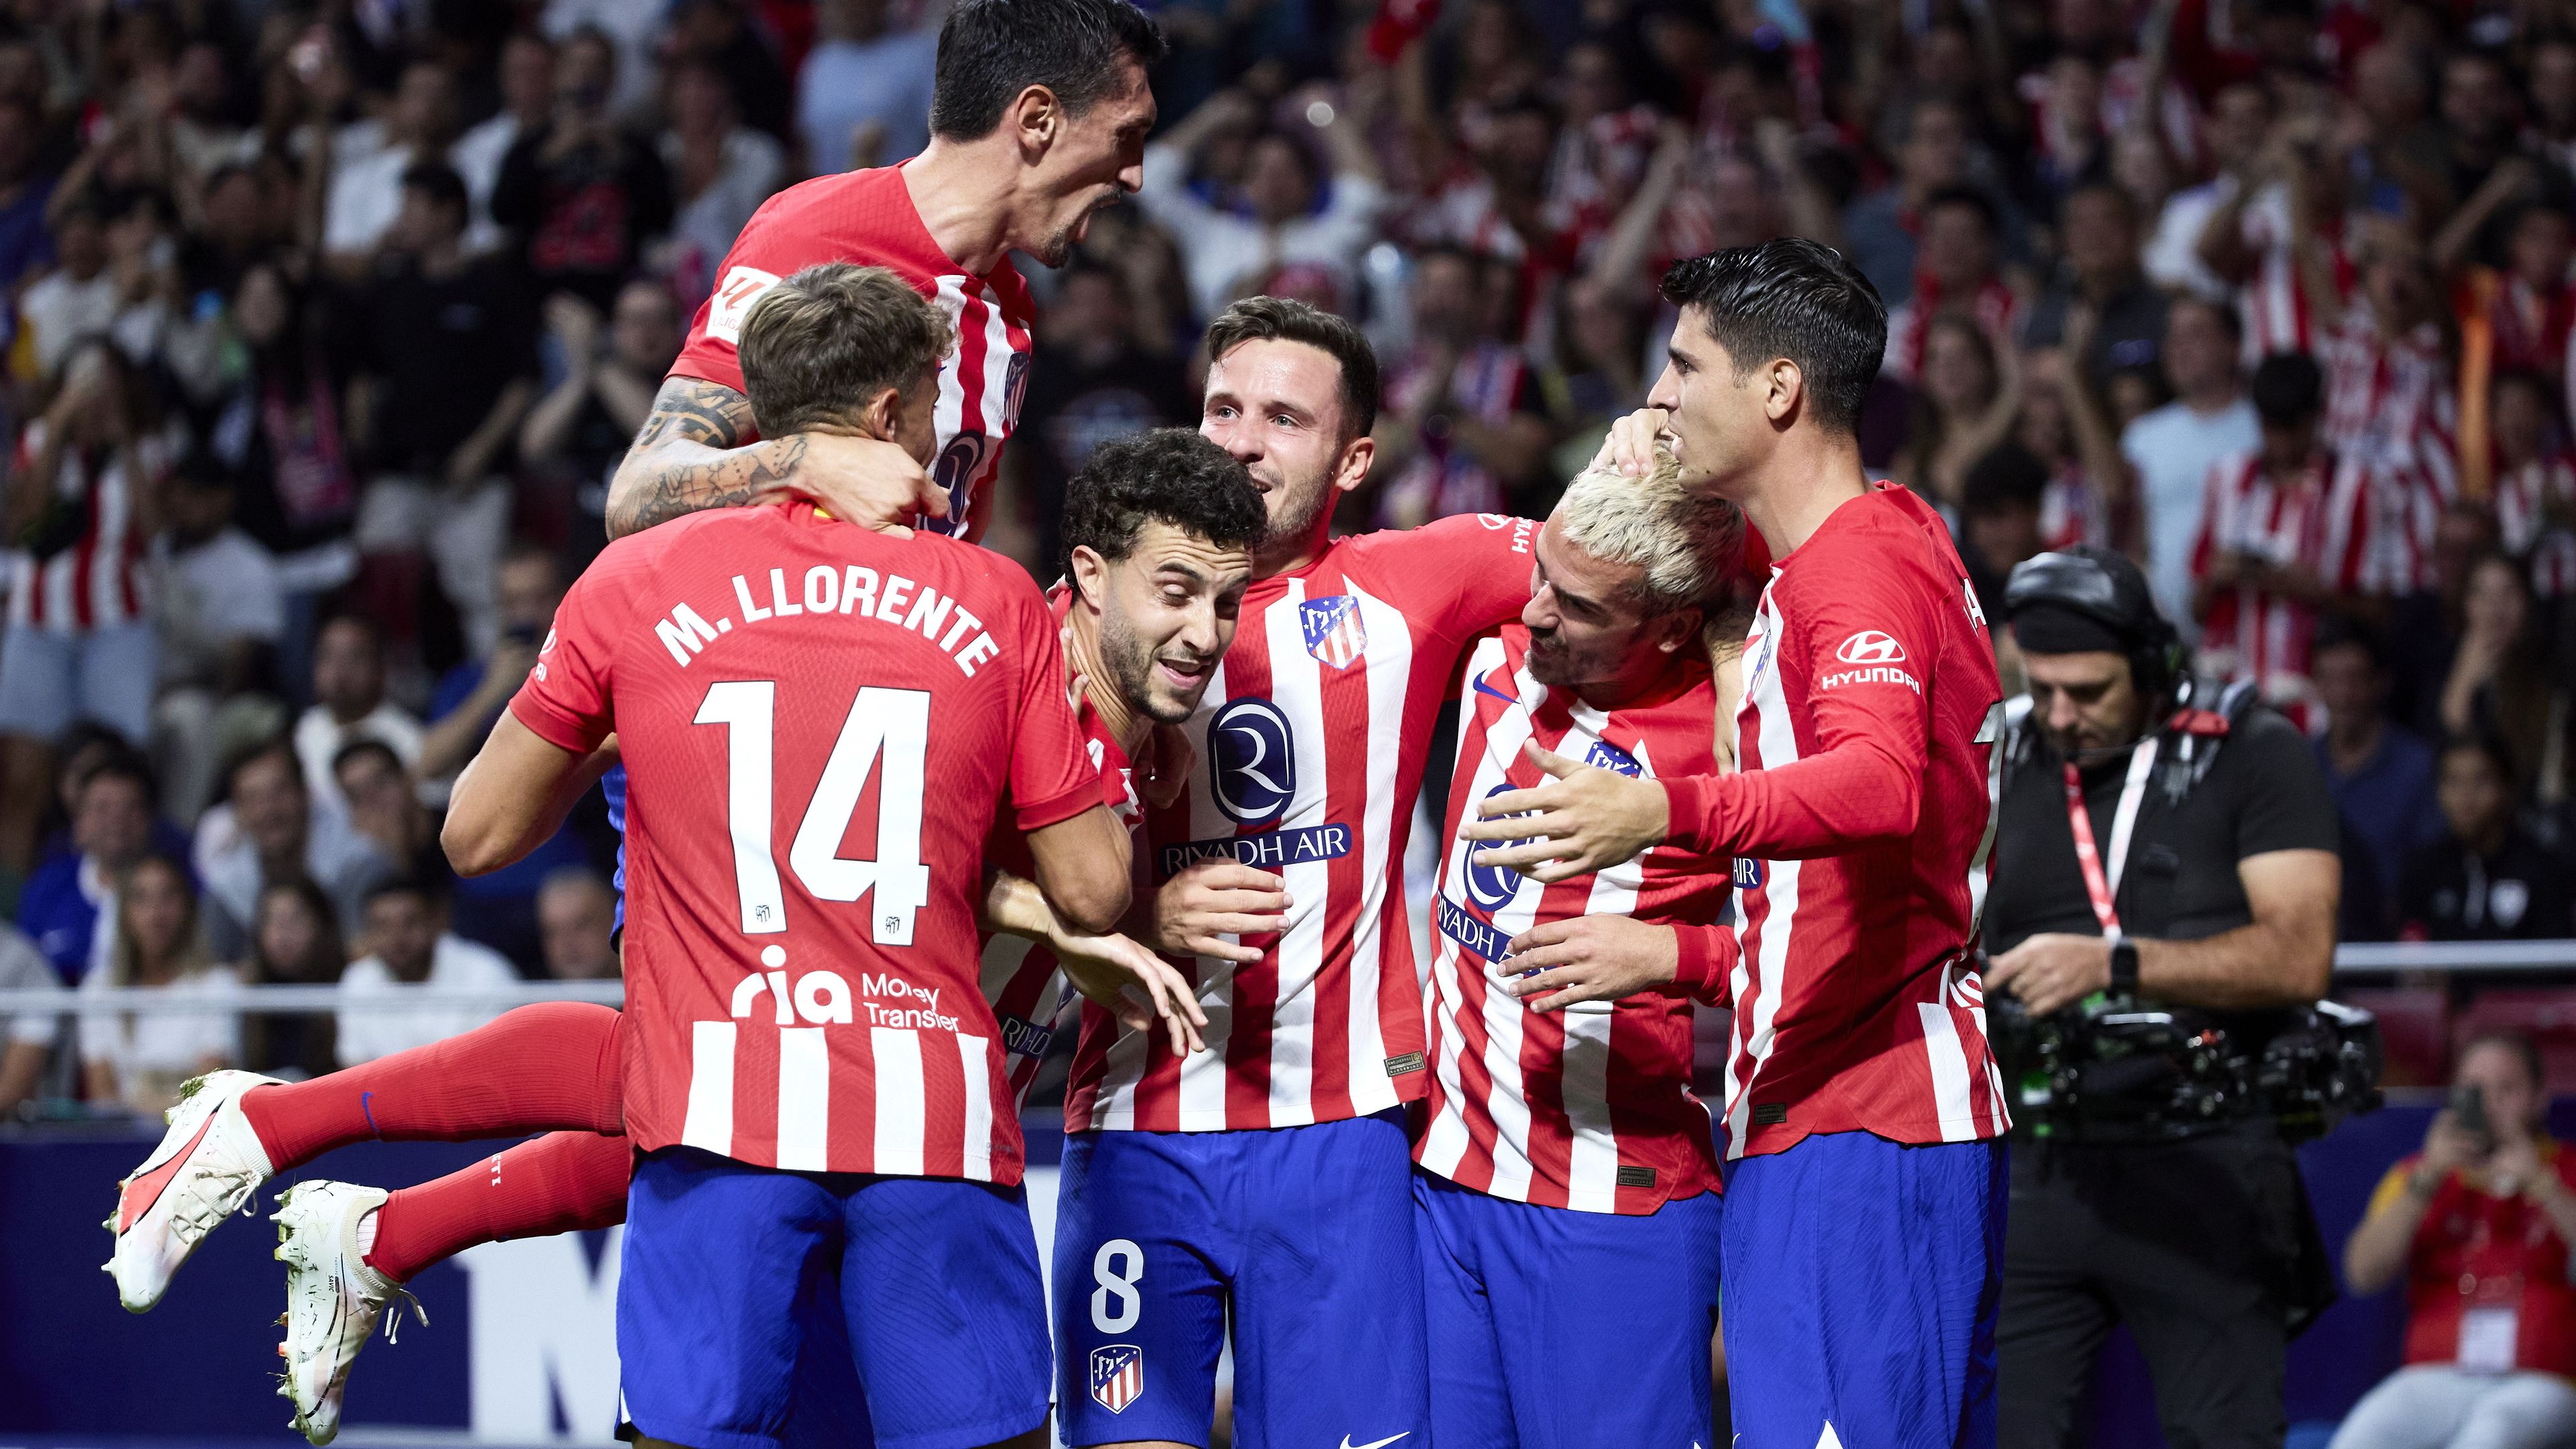 Győzelmével az Atlético Madrid az ötödik helyre lépett előre a tabellán, a Real viszont elveszítette vezető helyét. (Fotó: Getty Images)